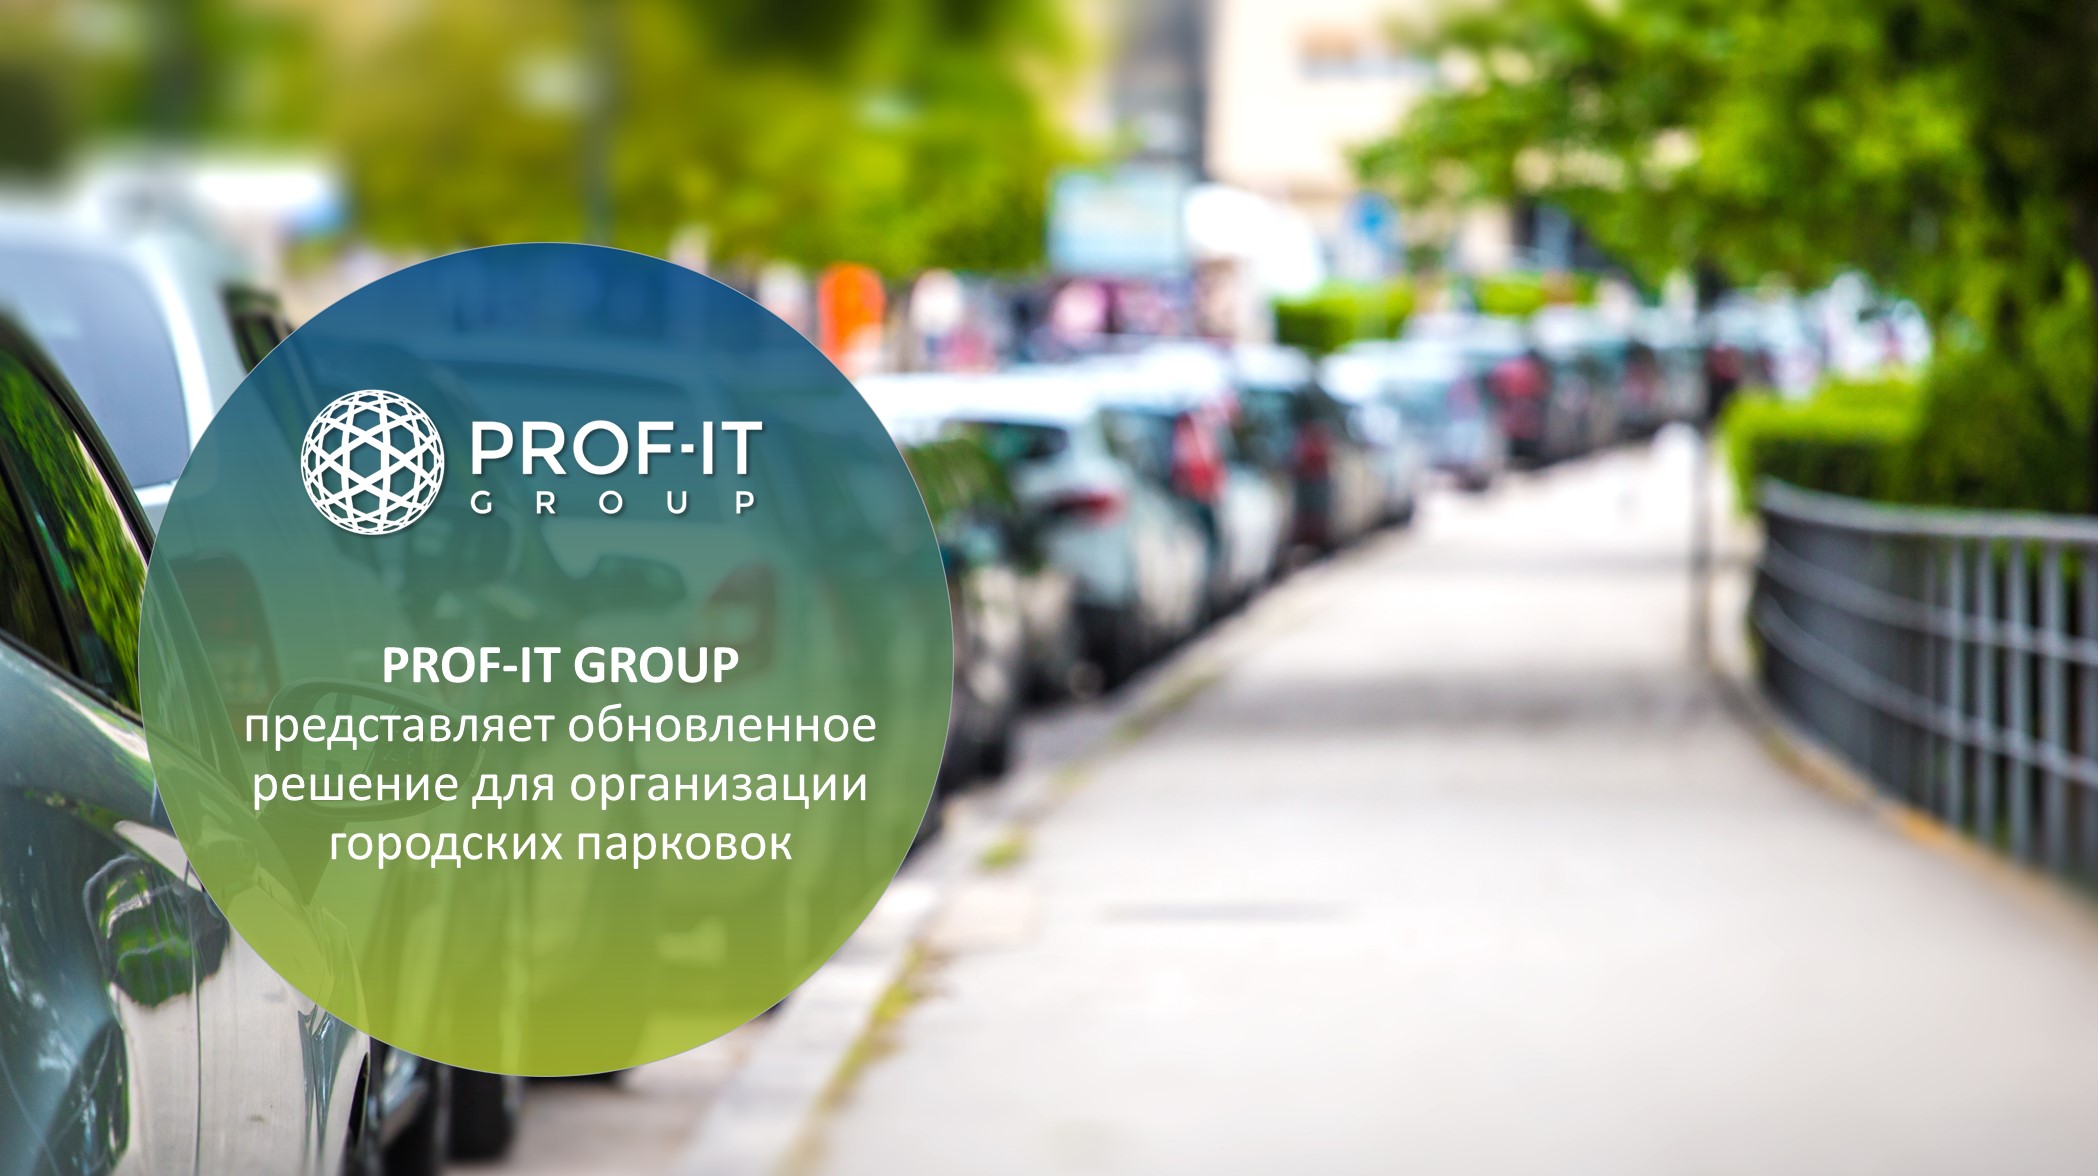 PROF-IT GROUP представляет обновленное решение для организации городских парковок